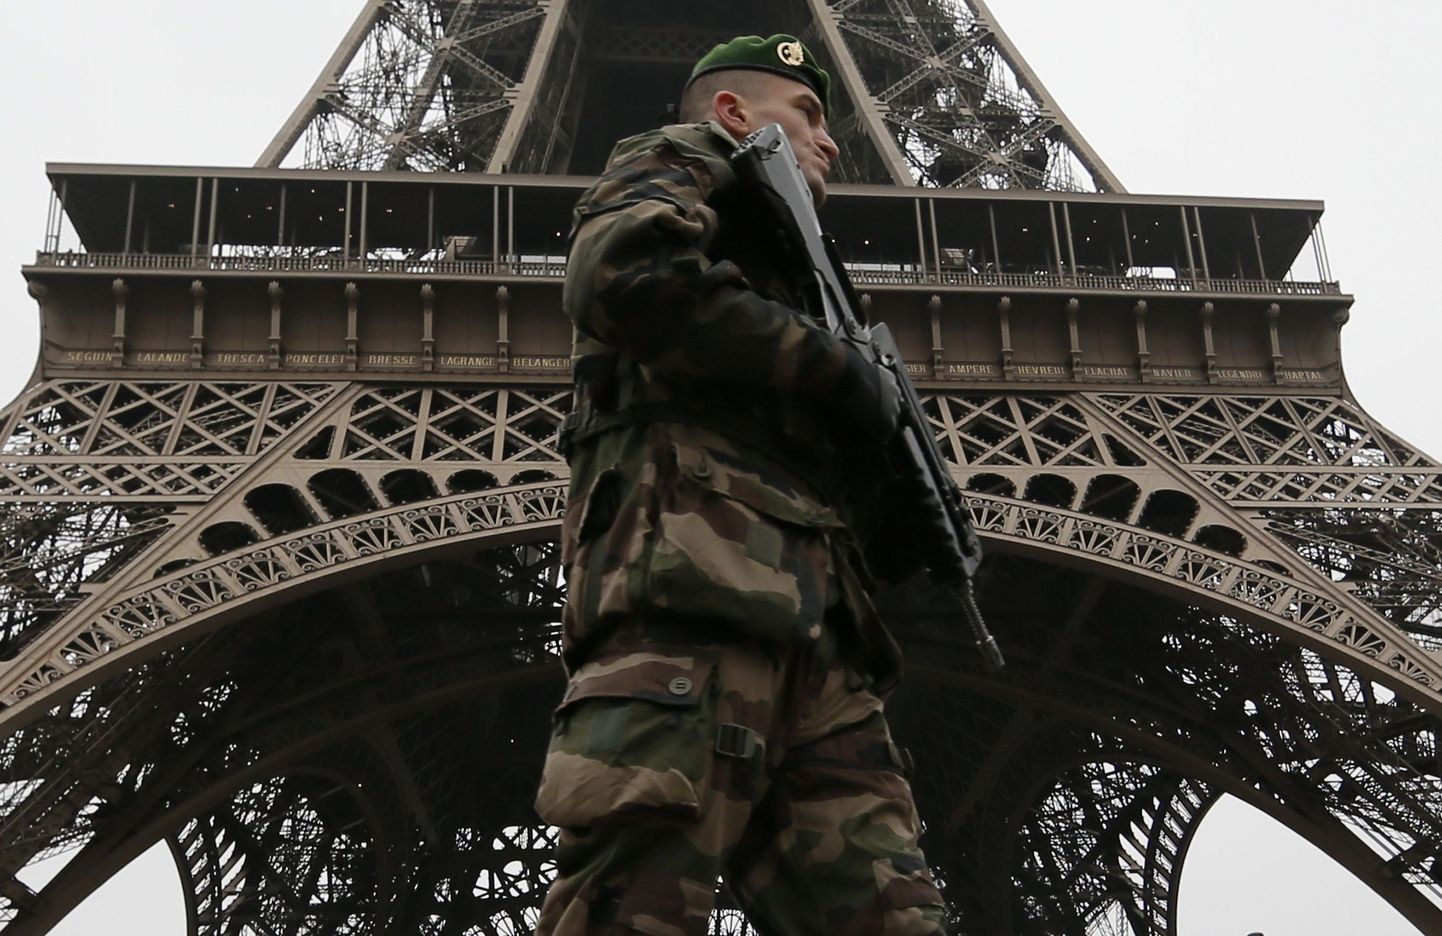 Prantsuse sõdur patrullimas Eiffel torni juures Pariisis.